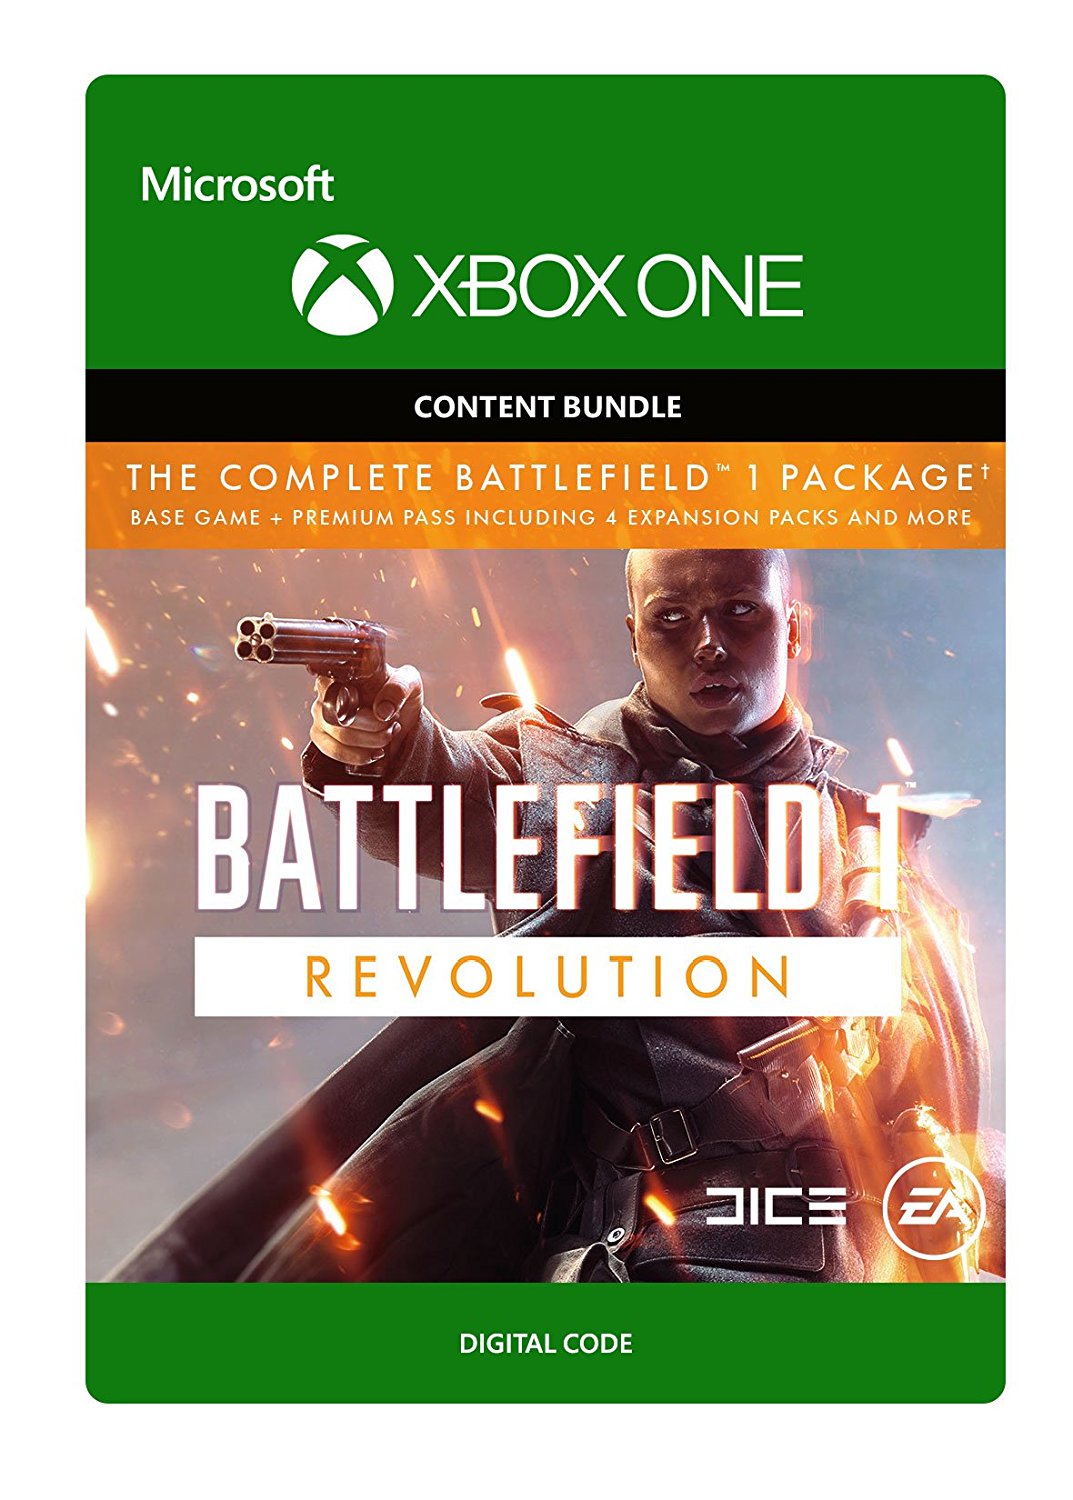 Battlefield 1: Revolution Edition Digital Copy CD Key (Xbox One): US Region (North America)